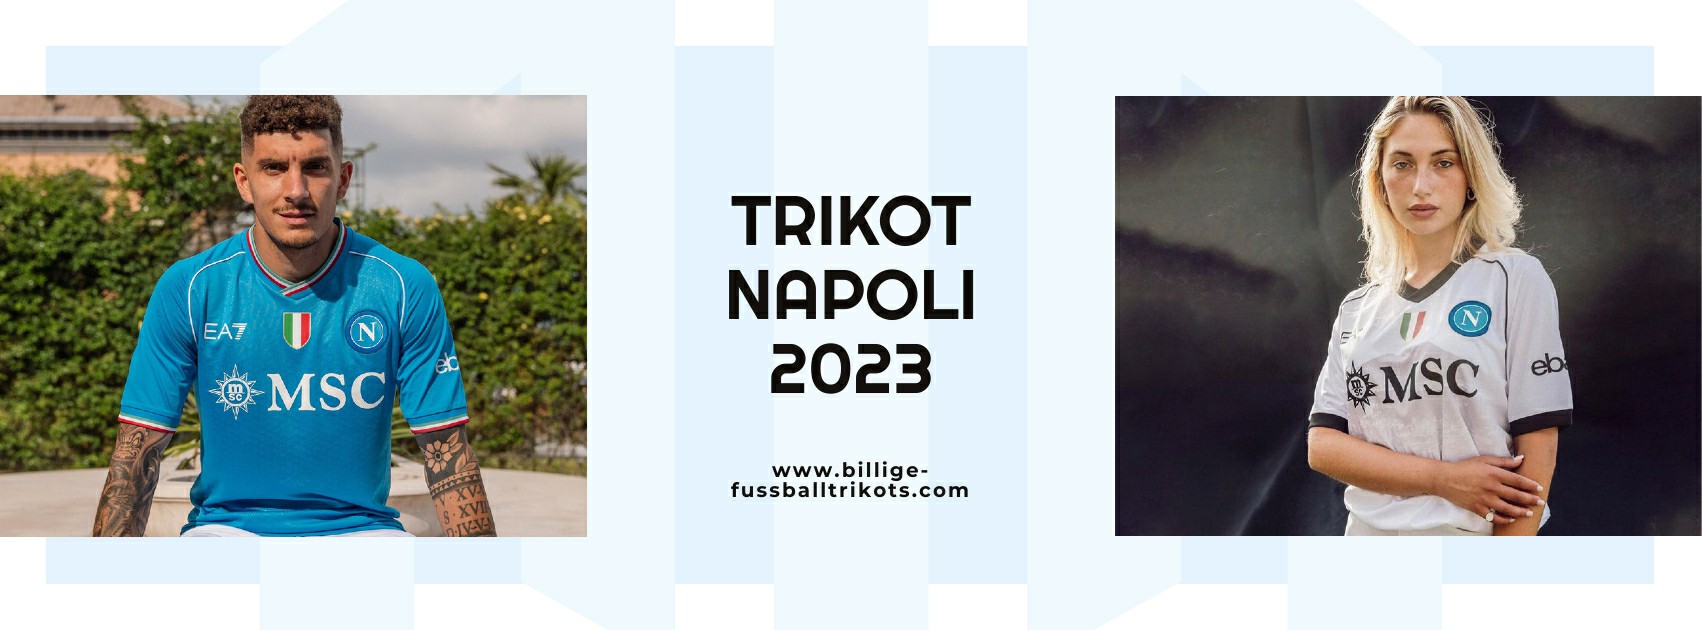 Napoli Trikot 2023-2024